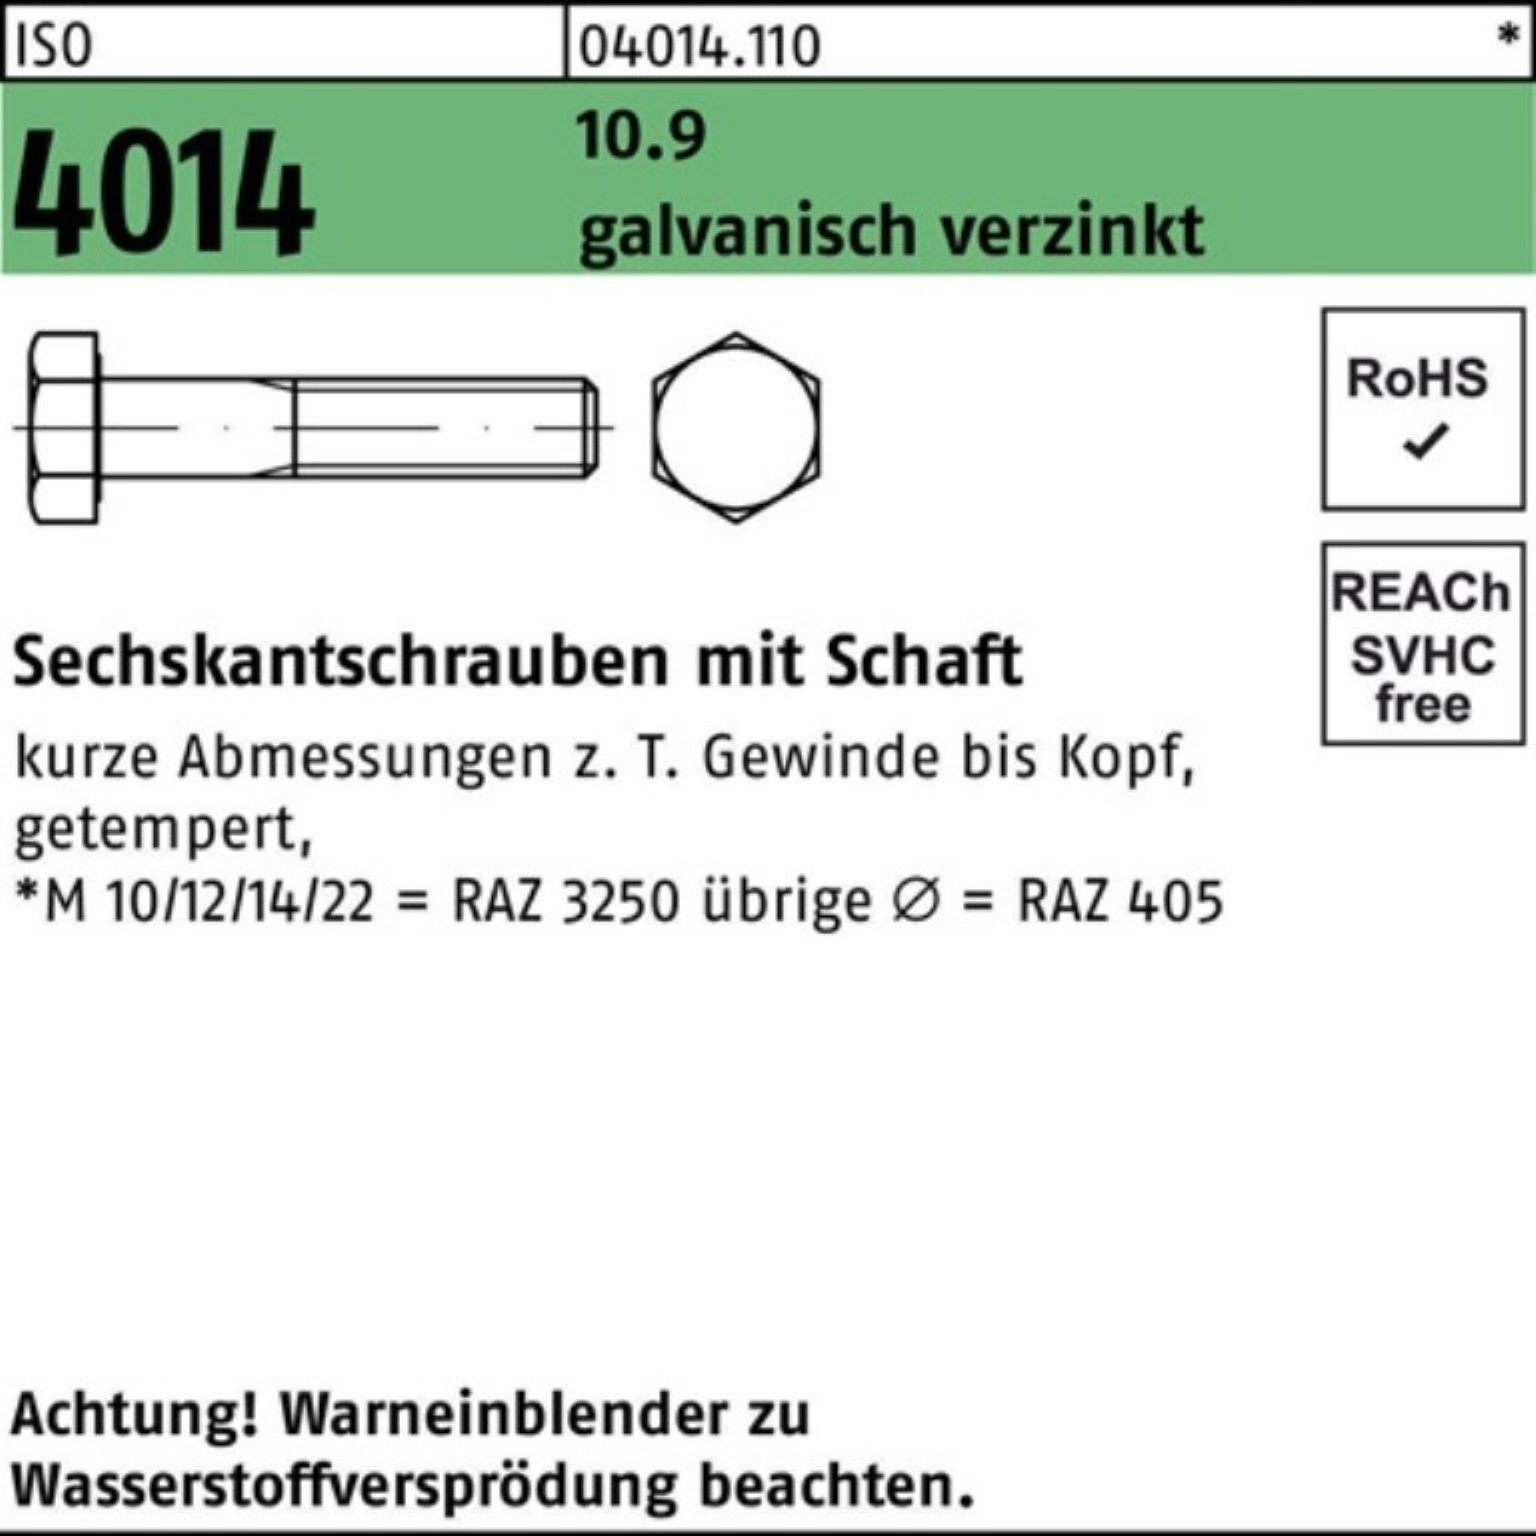 Bufab Sechskantschraube 100er Pack Sechskantschraube 10.9 galv.verz. 4014 ISO Schaft M14x 5 50